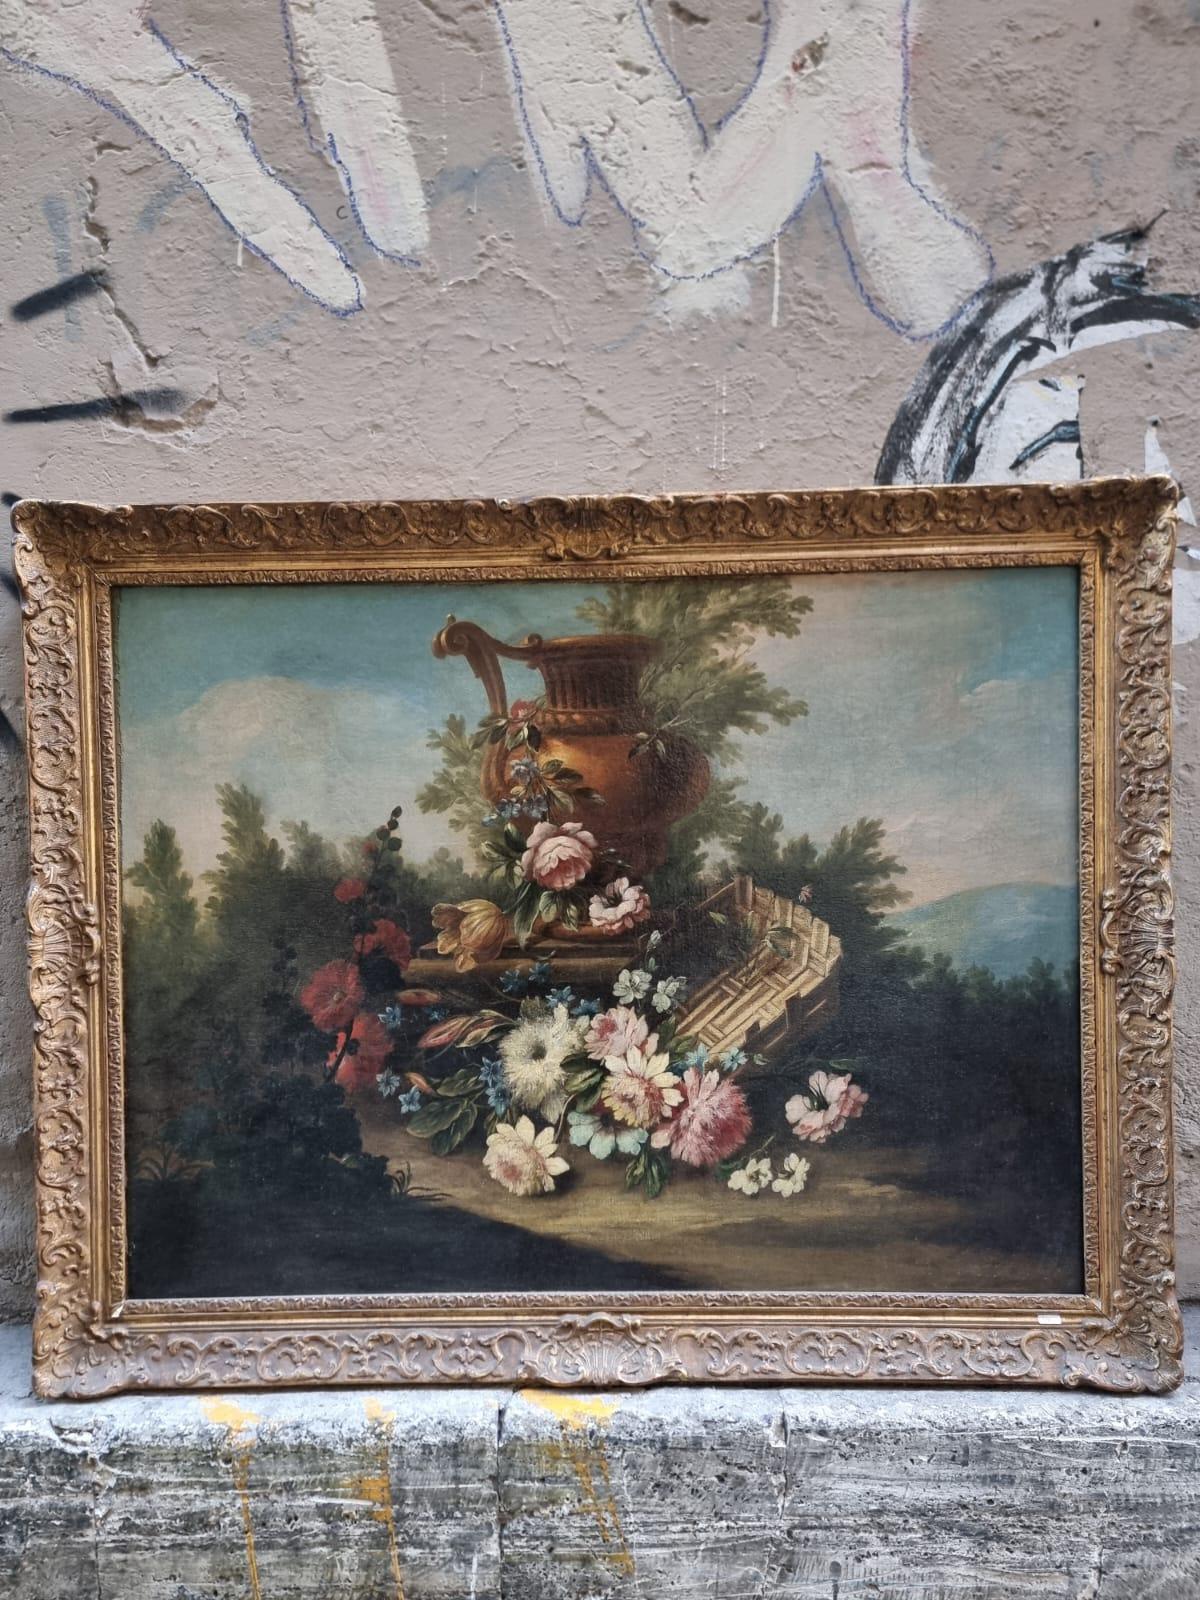 Bel dipinto olio su tela raffigurante natura morta, XVIII secolo, Francia. 

Il quadro ritrae una composizione di fiori di varie tipologie, un grande vaso e una cesta. Una delle particolarità del dipinto è l'uso dei colori, caratterizzato da